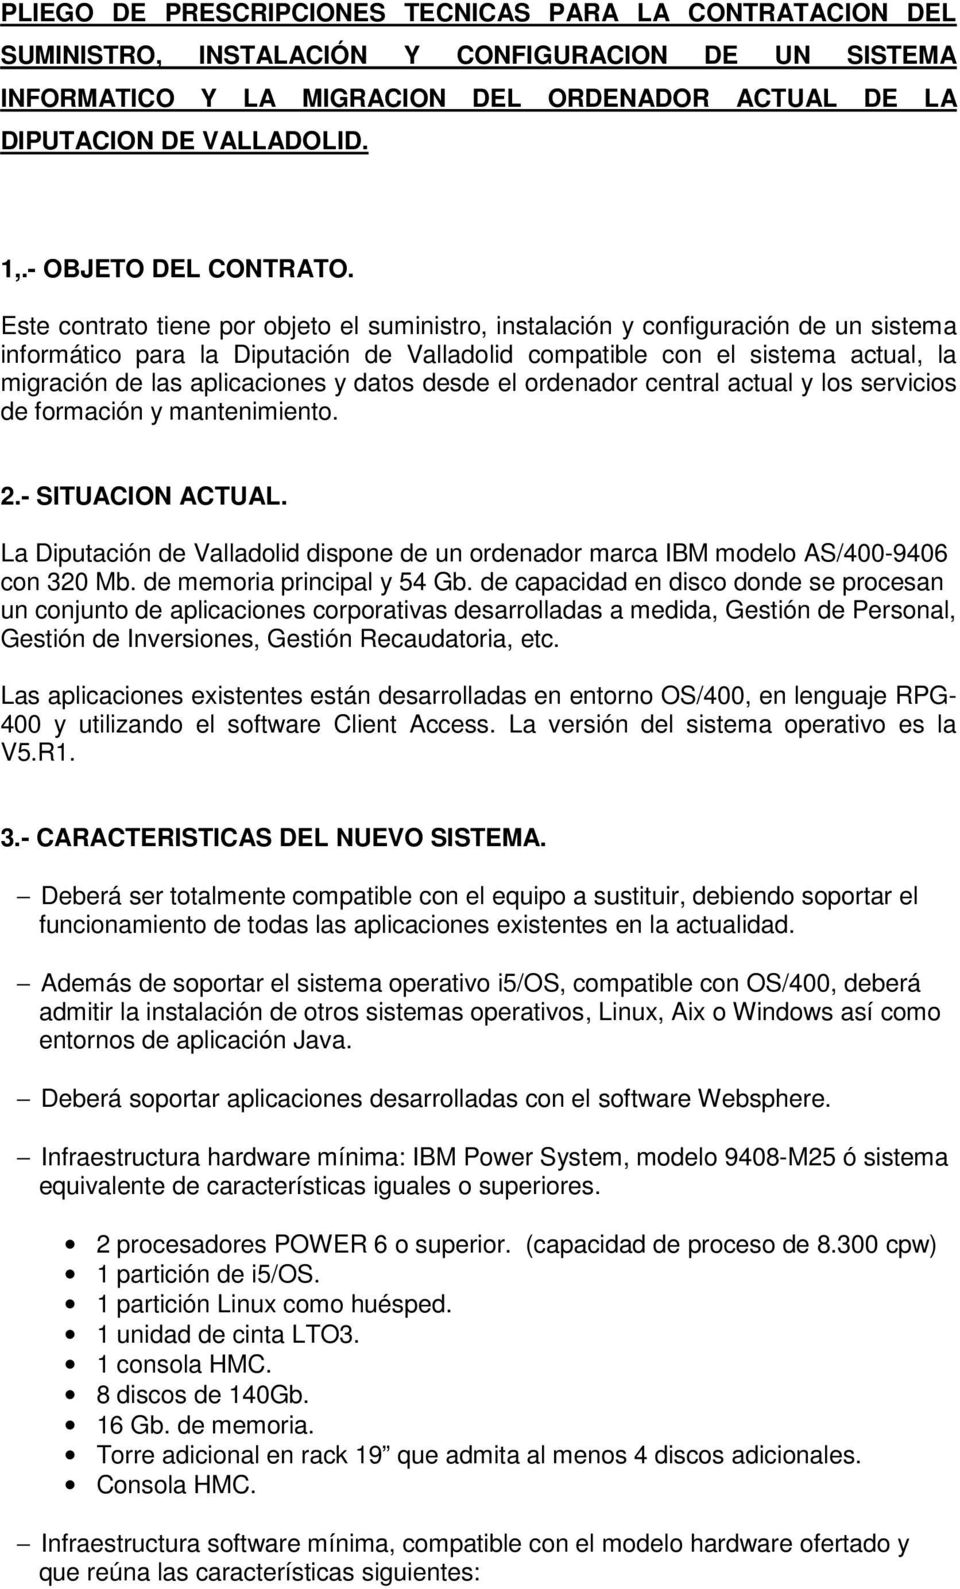 Este contrato tiene por objeto el suministro, instalación y configuración de un sistema informático para la Diputación de Valladolid compatible con el sistema actual, la migración de las aplicaciones